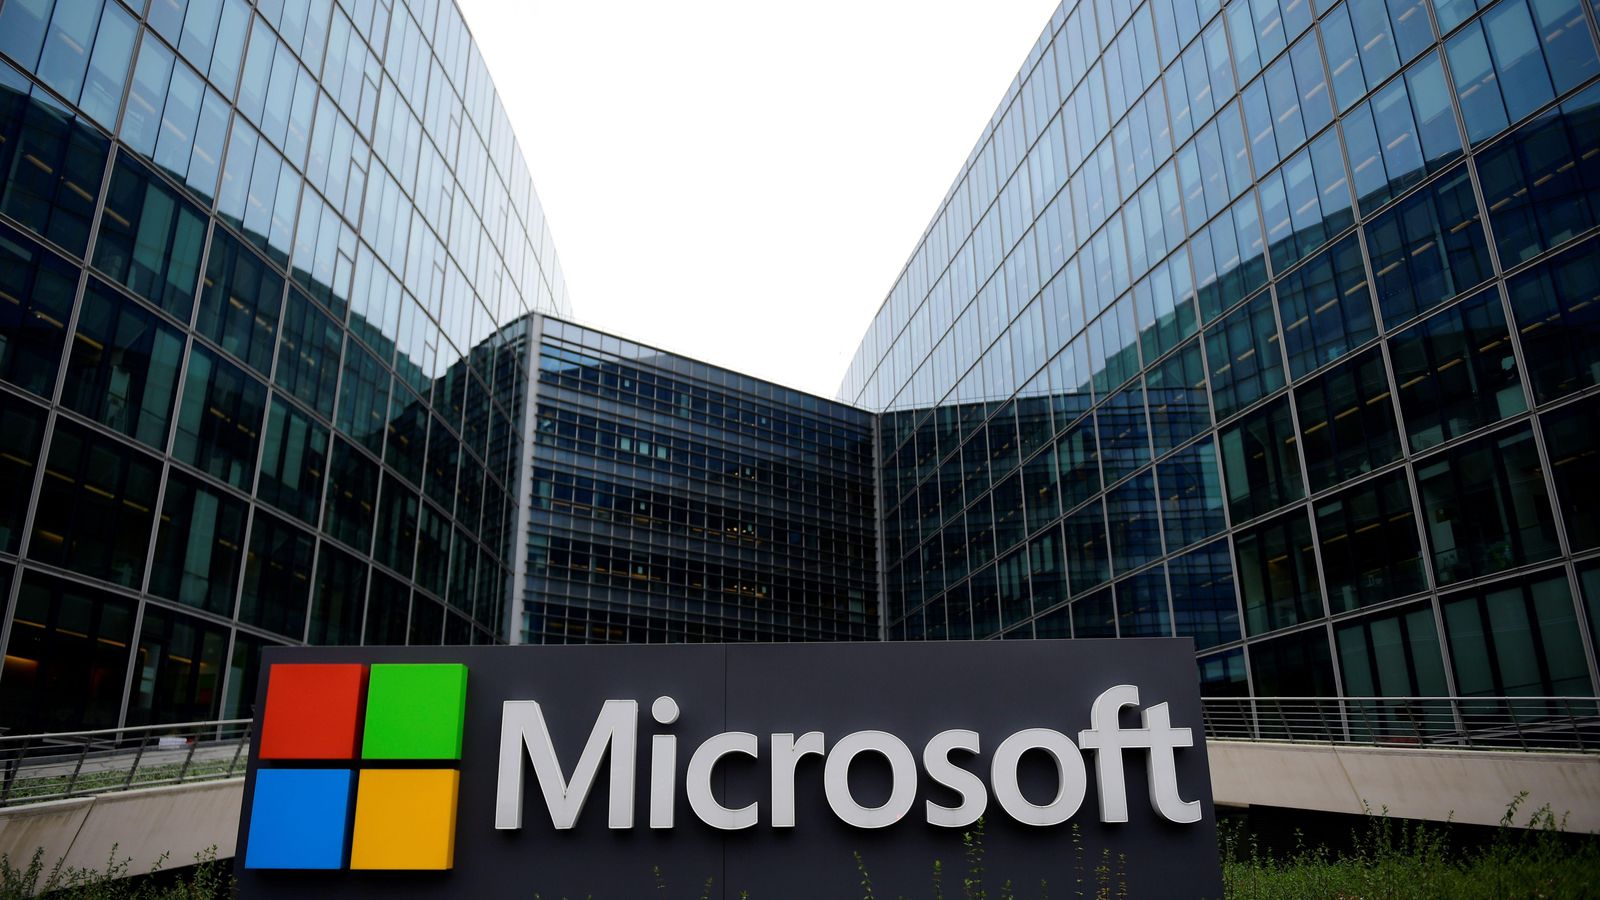 Microsoft conferma di ascoltare le conversazioni dei propri utenti